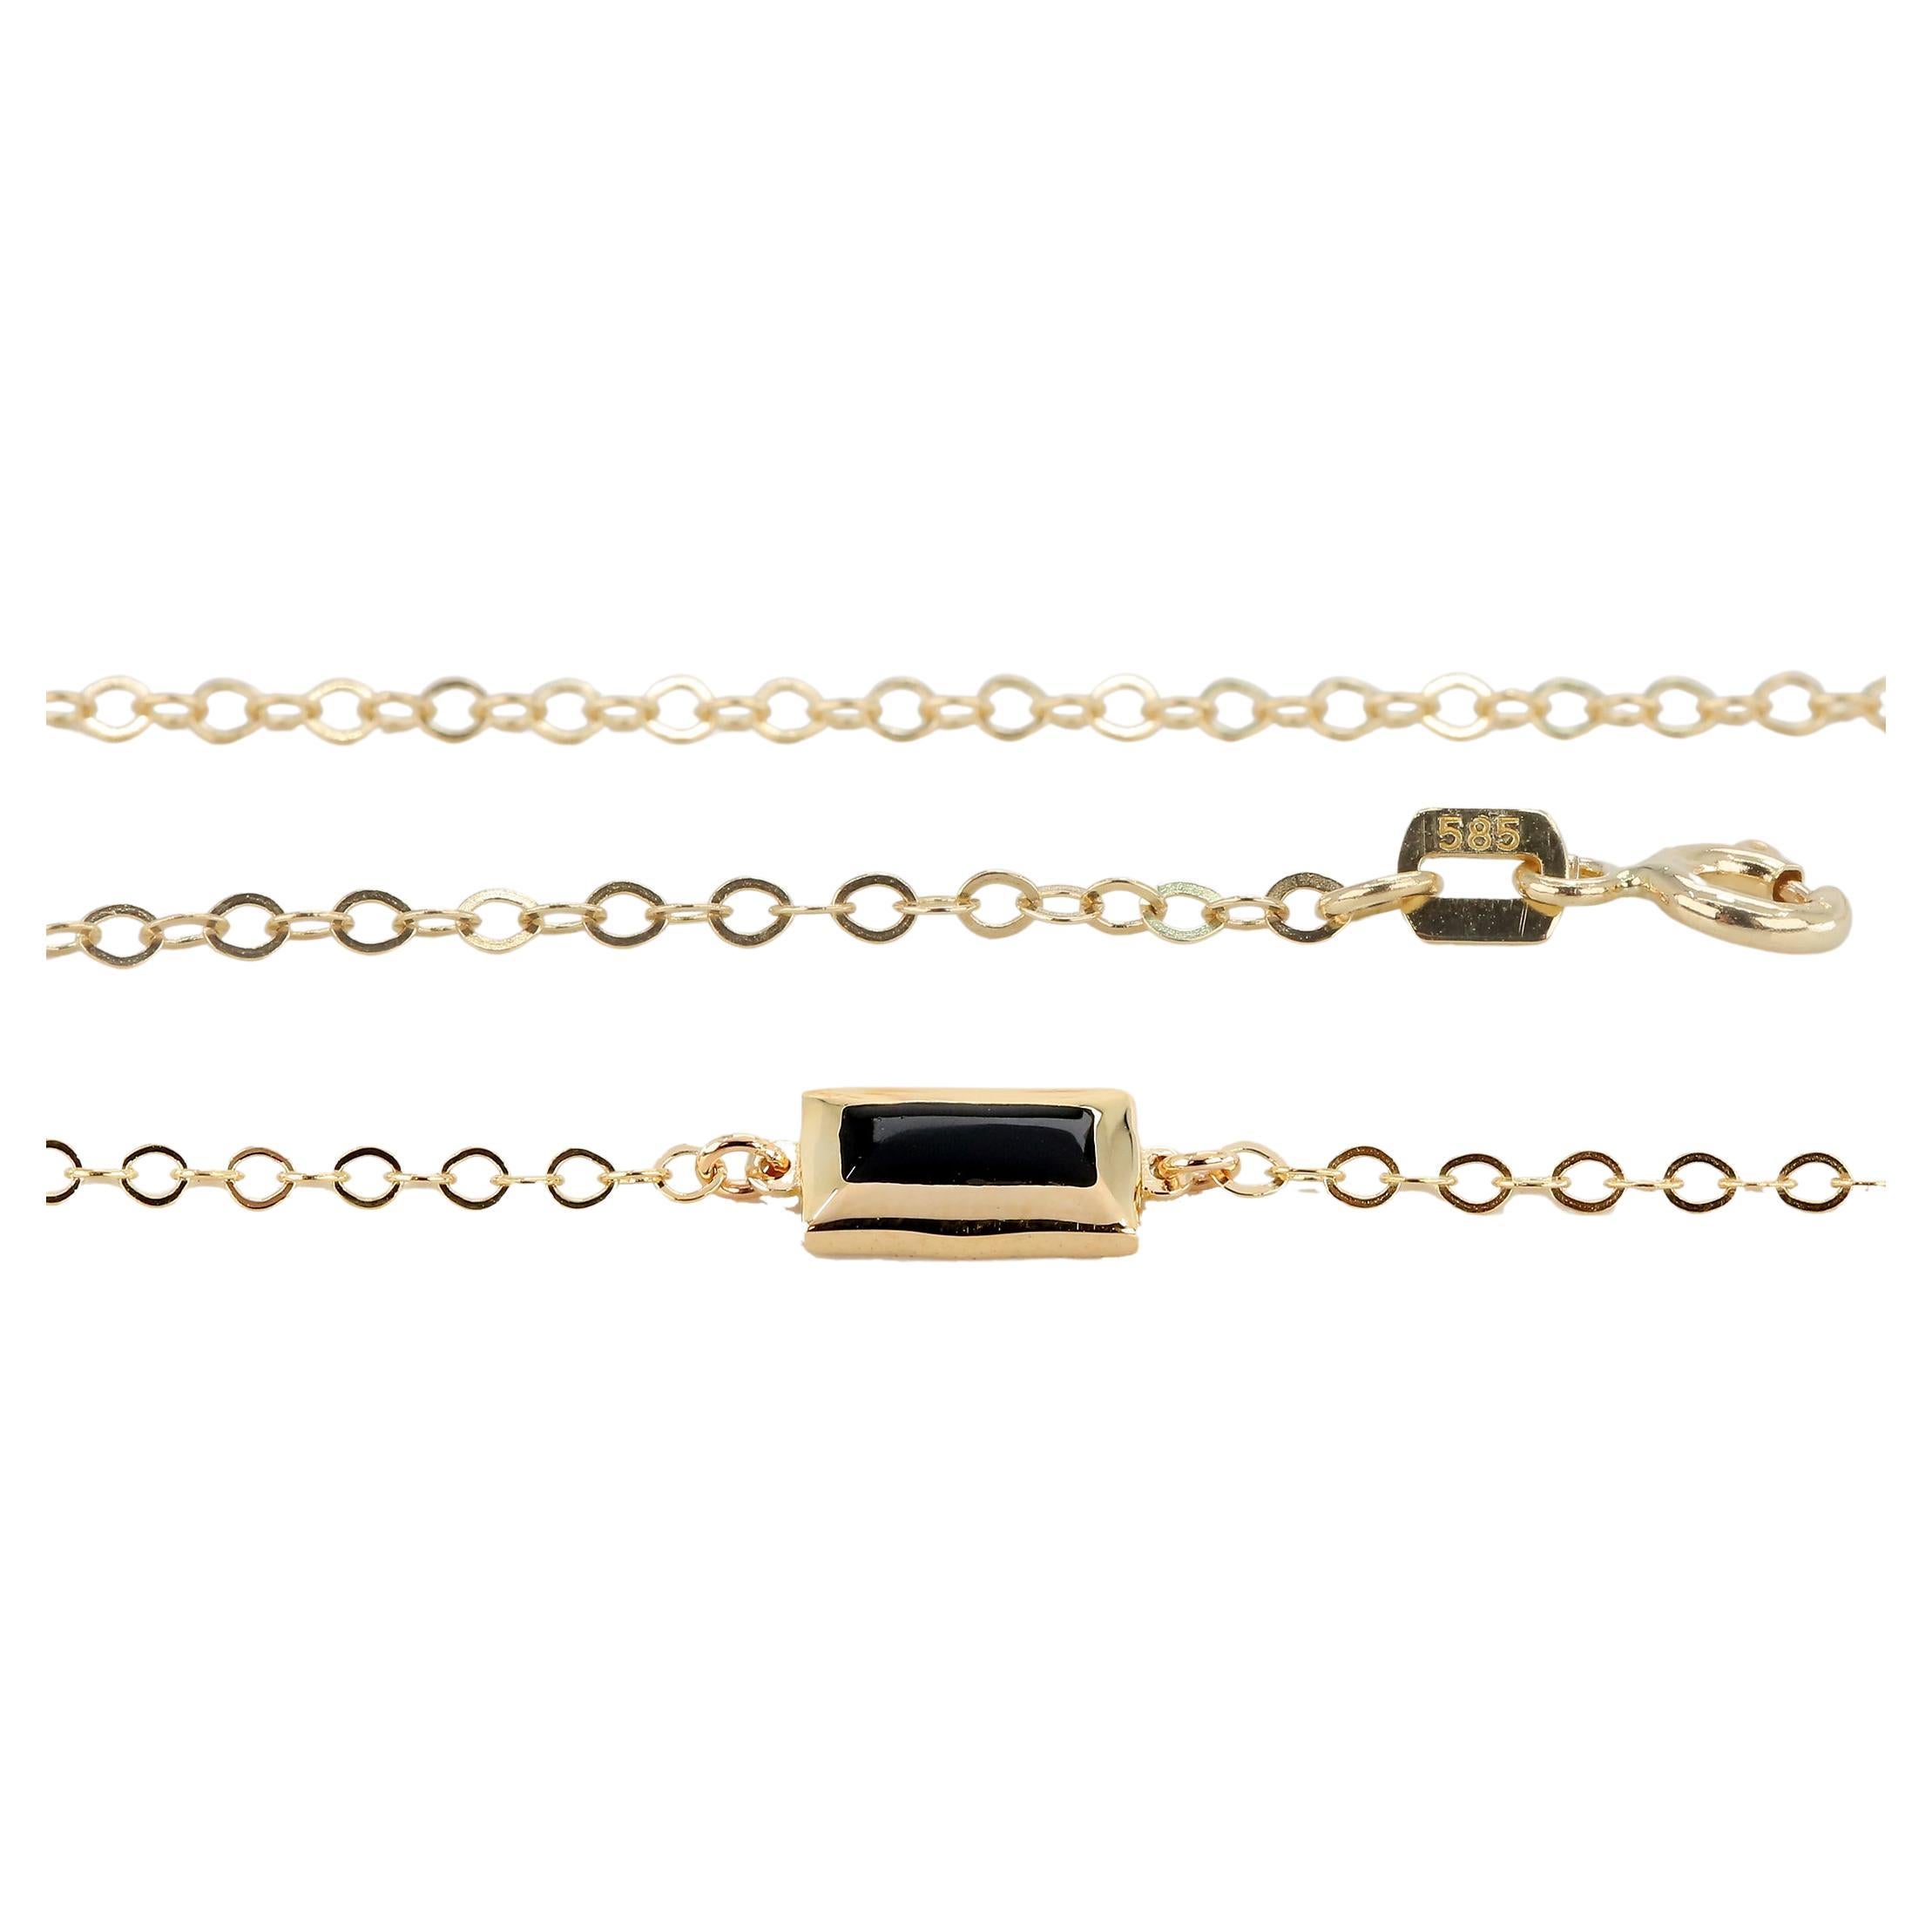 Bracelet à breloques de forme rectangulaire en or 14 carats émaillé noir